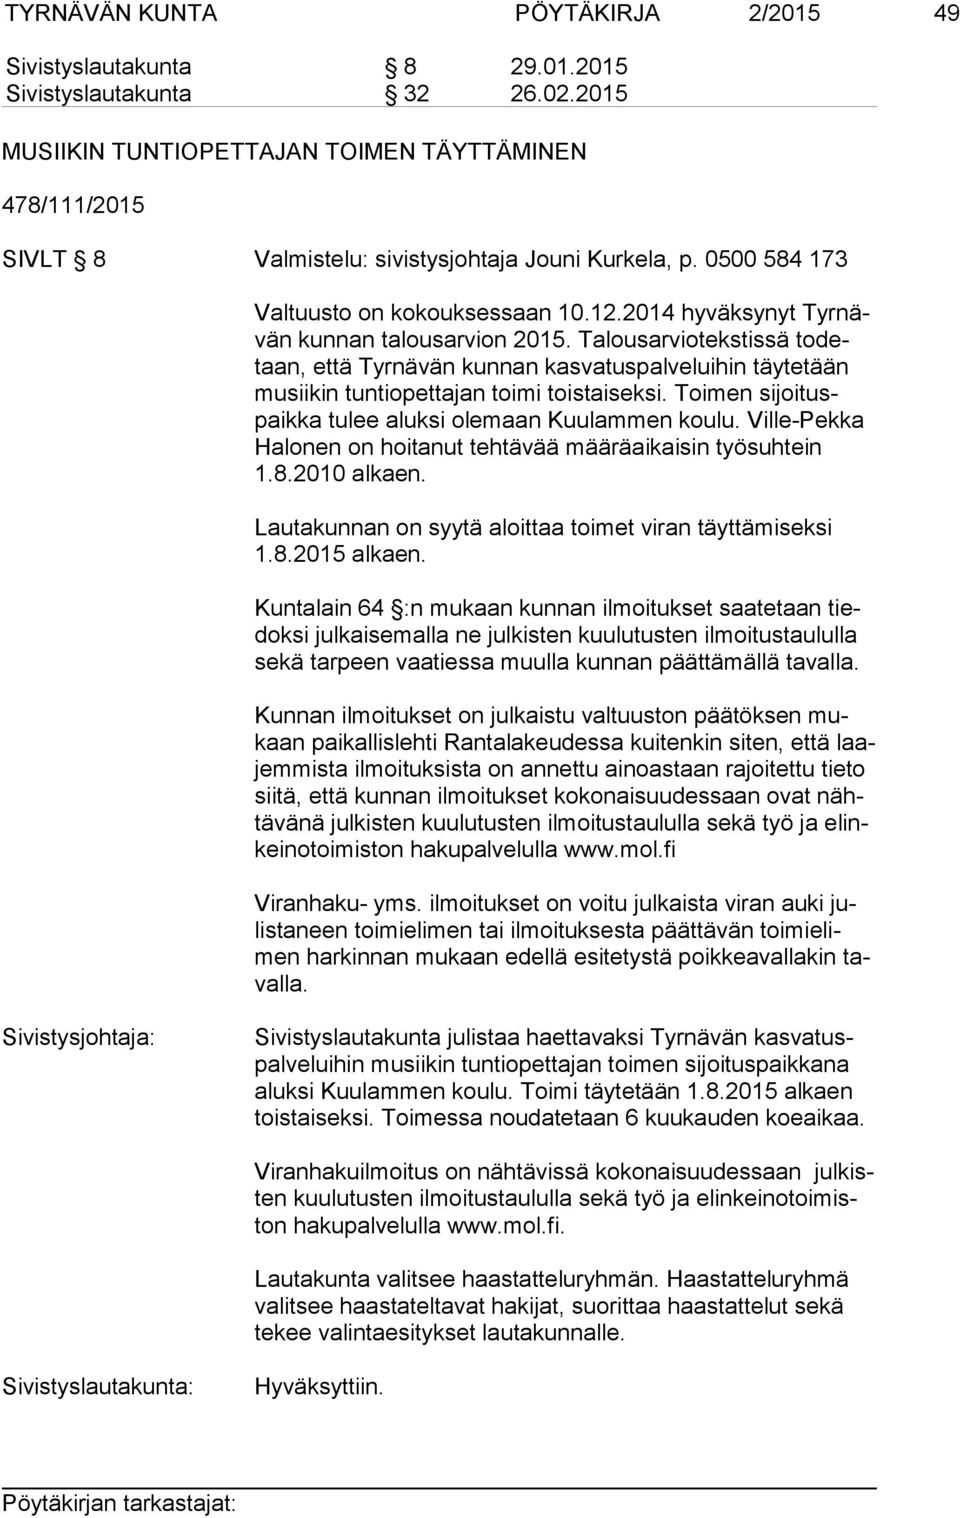 2014 hyväksynyt Tyr nävän kunnan talousarvion 2015. Talousarviotekstissä to detaan, että Tyrnävän kunnan kasvatuspalveluihin täytetään mu sii kin tuntiopettajan toimi toistaiseksi.